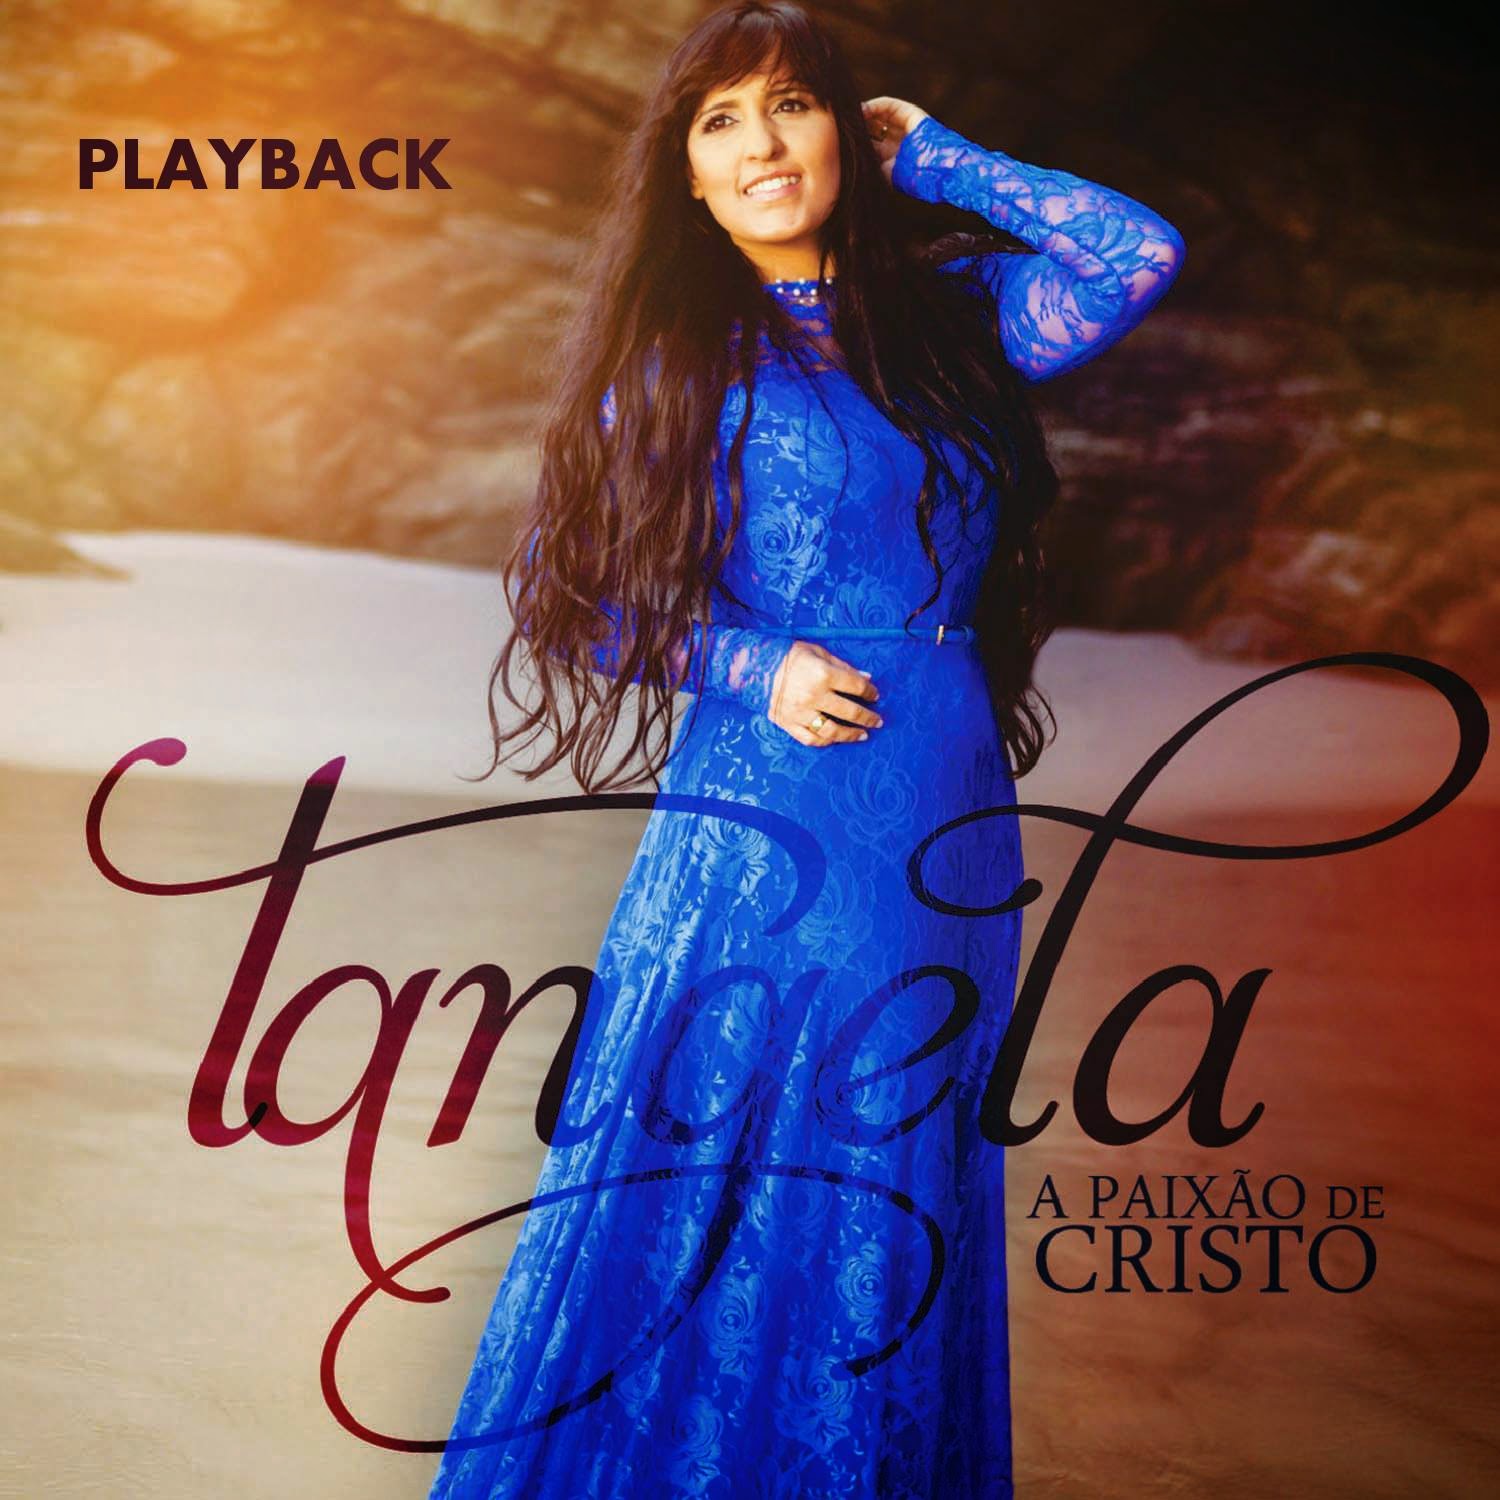 Tangela - A Paixão de Cristo - Playback 2015